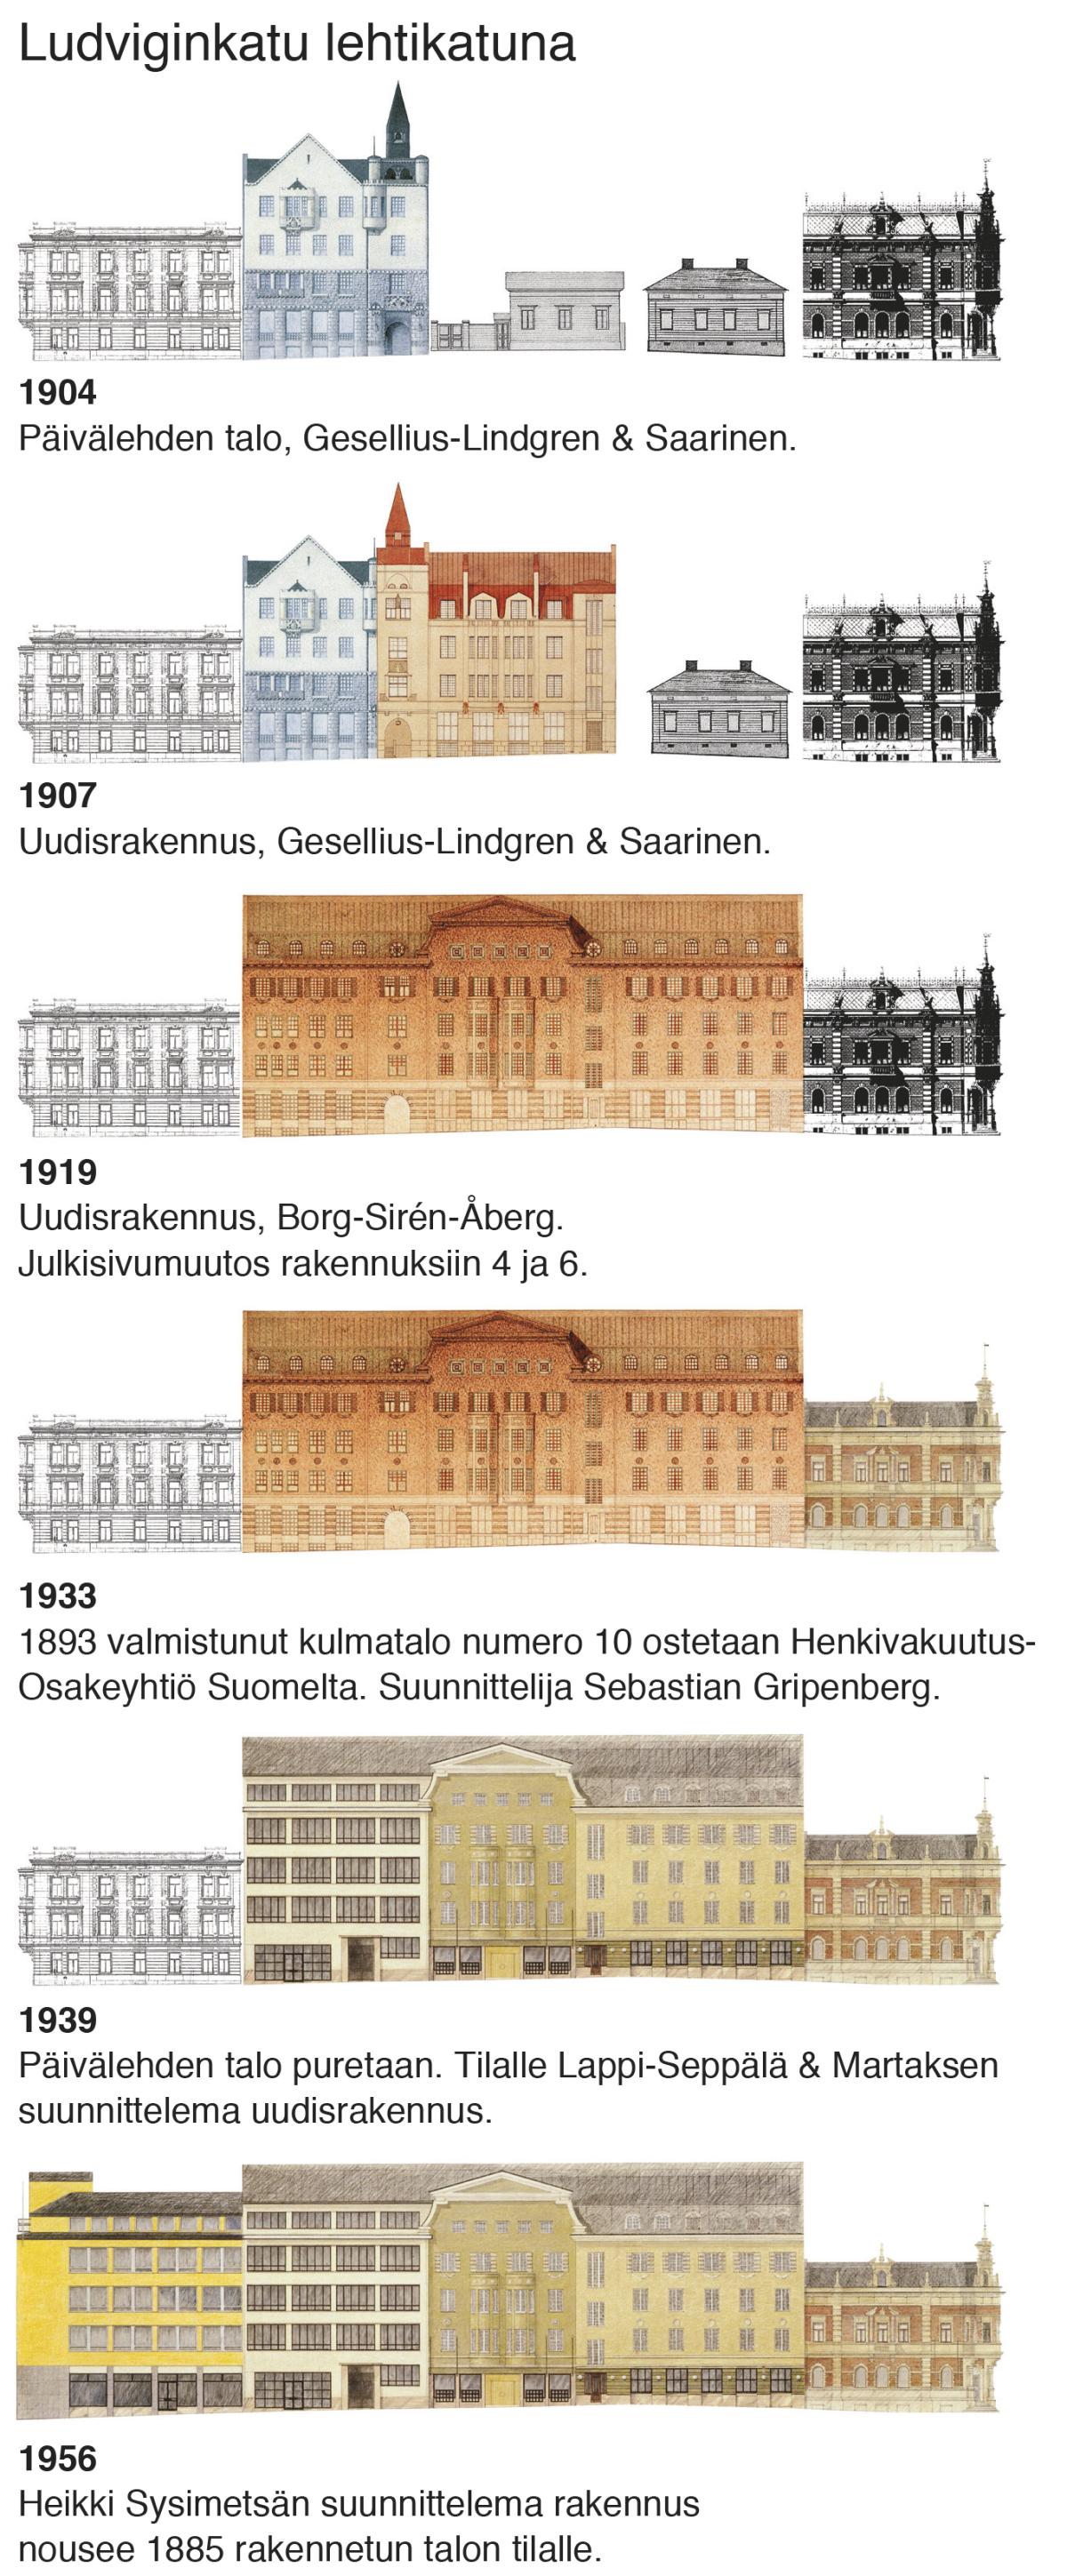 En tecknad bildserie visar ändringarna av byggnaderna på södra sidan av Ludvigsgatan 1904–1956